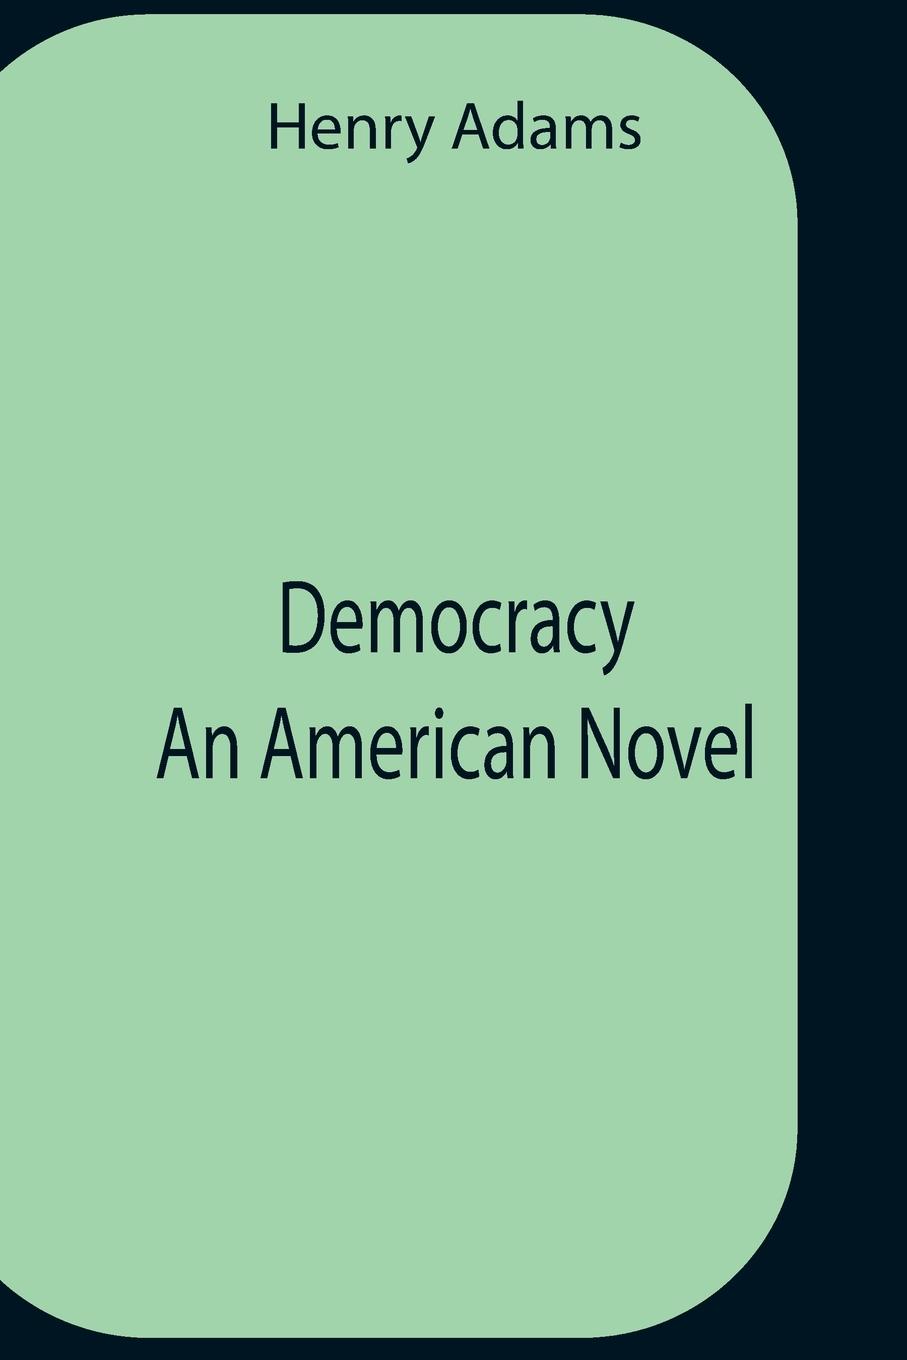 Carte Democracy An American Novel 